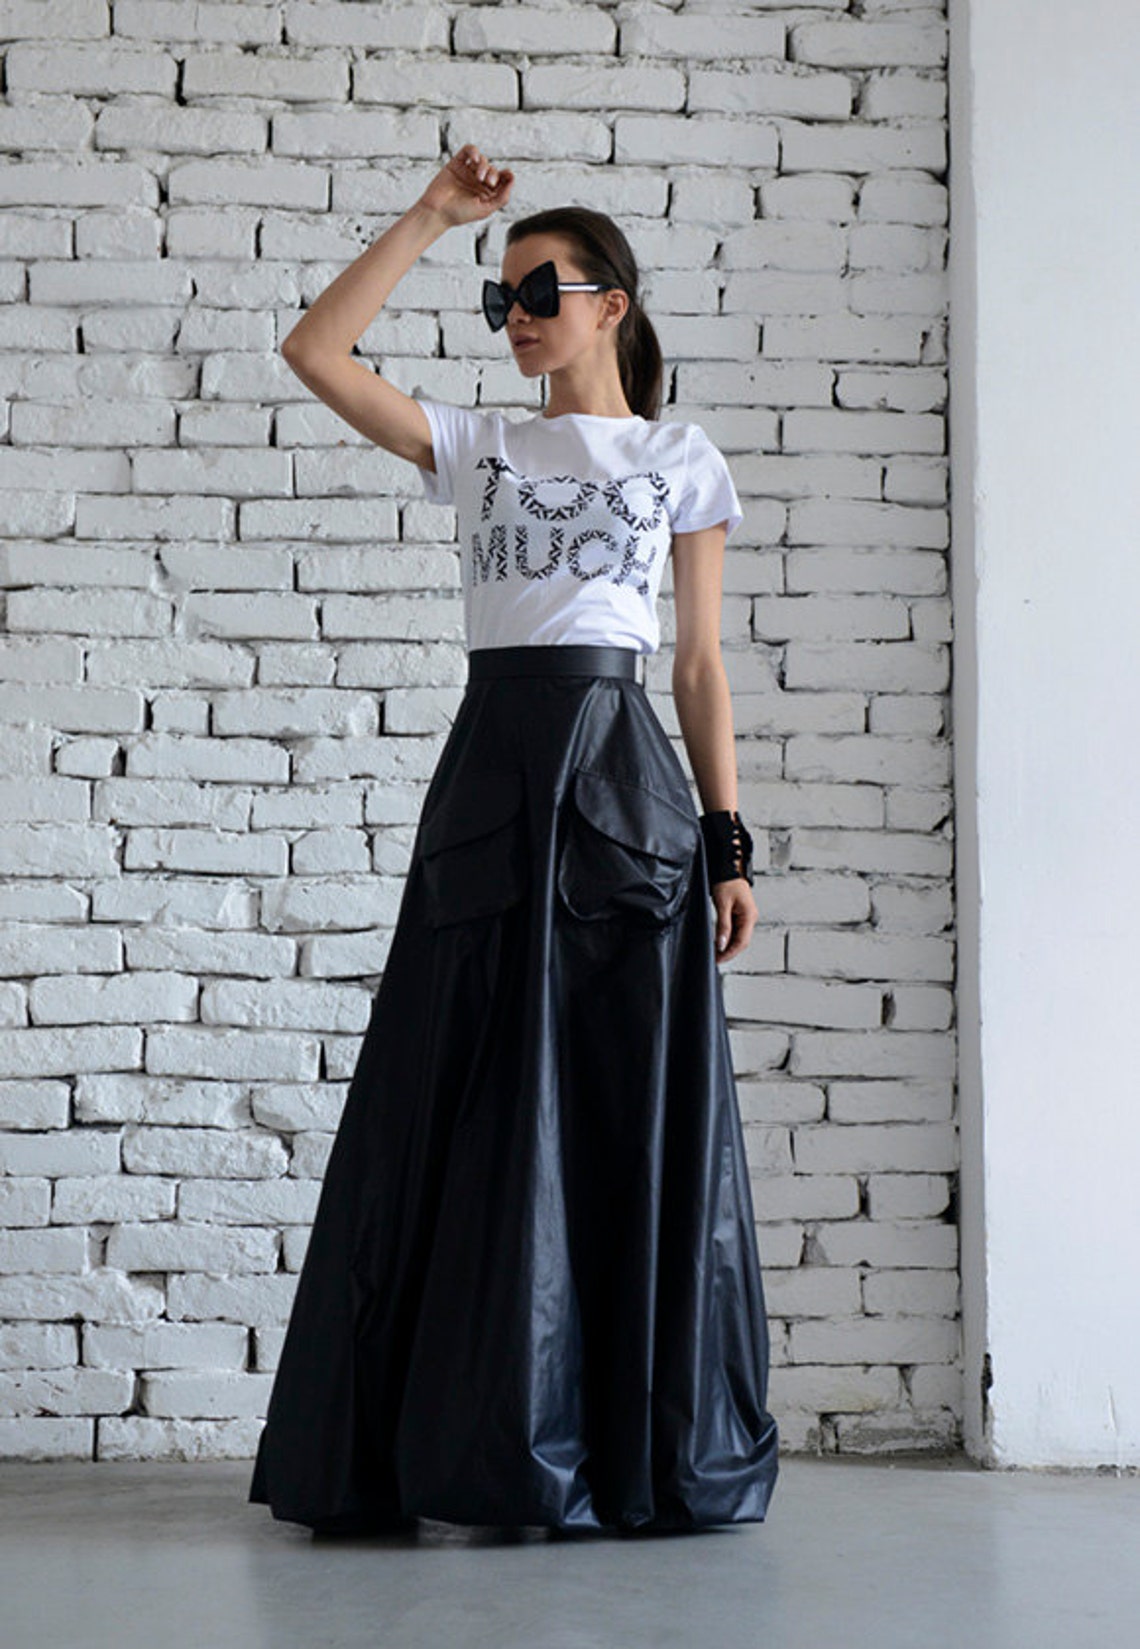 Maxi Black Skirt/Long Casual Skirt/Oversize Long Skirt/High | Etsy